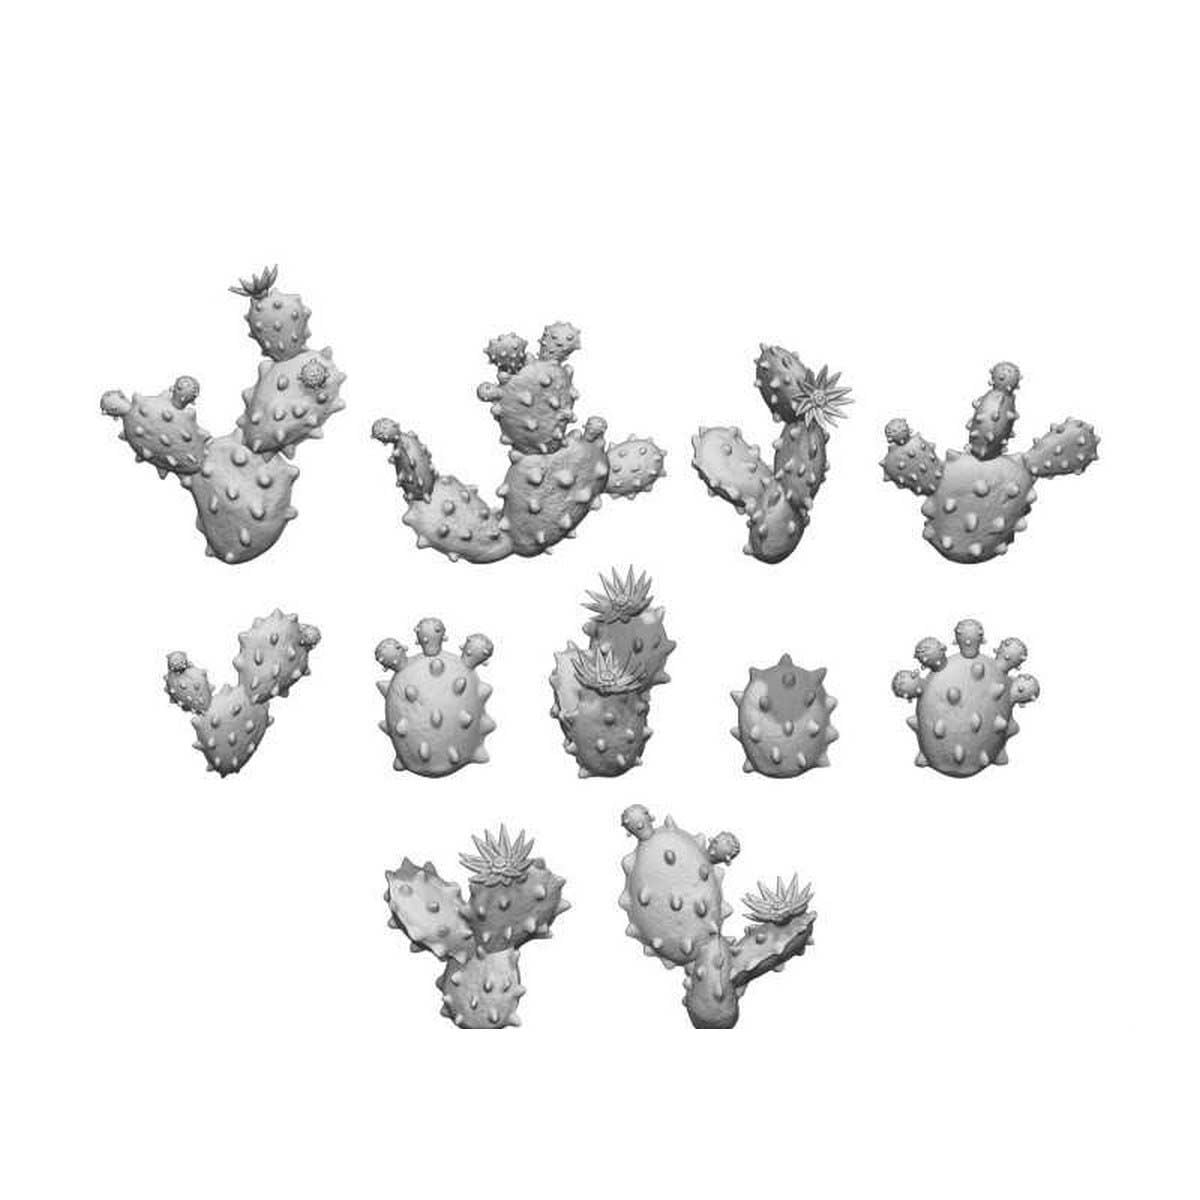 3D Printed Set - Nopal Cactus